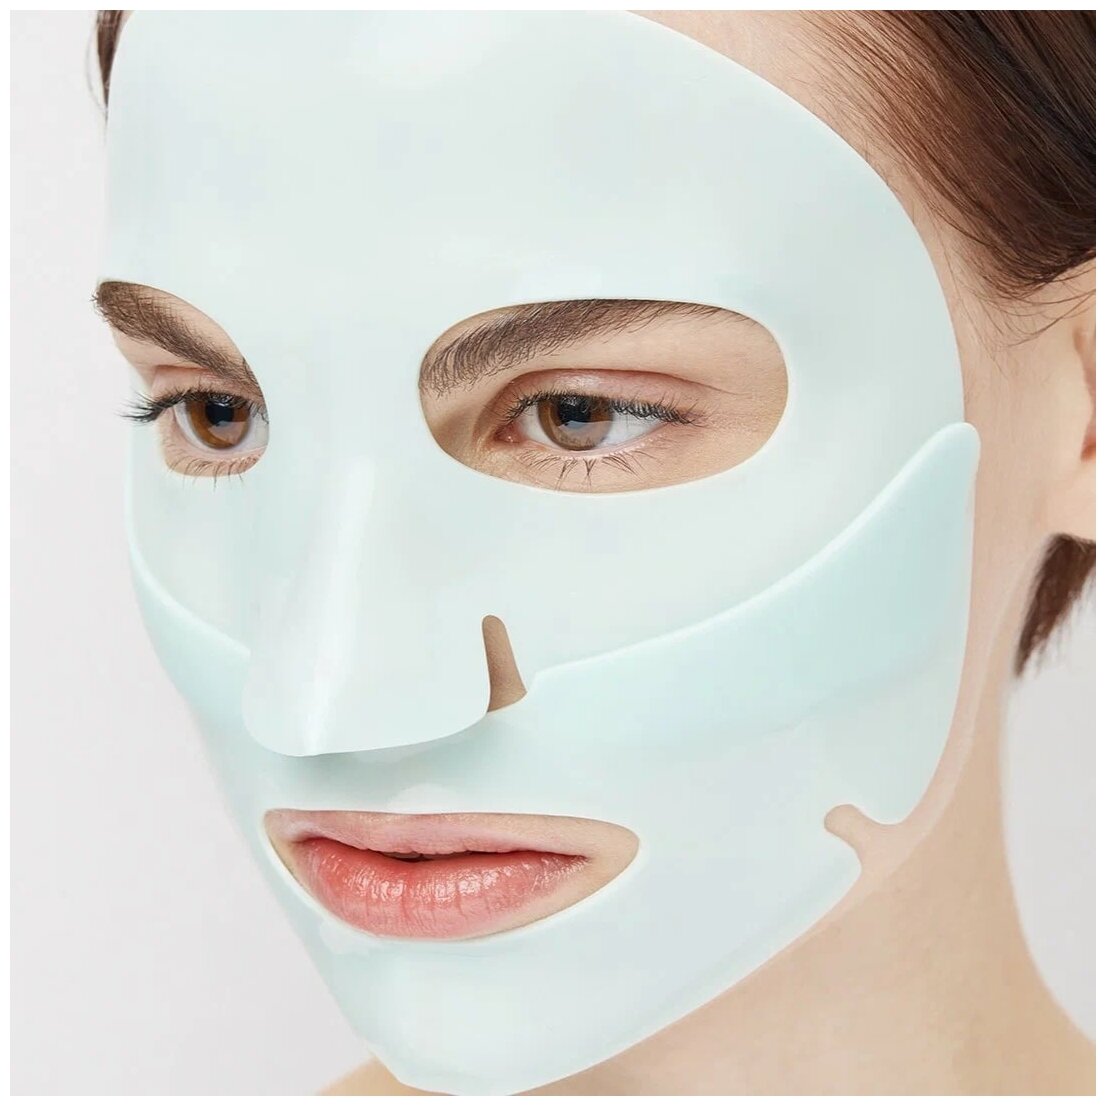 Dr. Jart+ Успокаивающая моделирующая маска с охлаждающим эффектом Cryo Rubber With Soothing Allantoin, 45 г